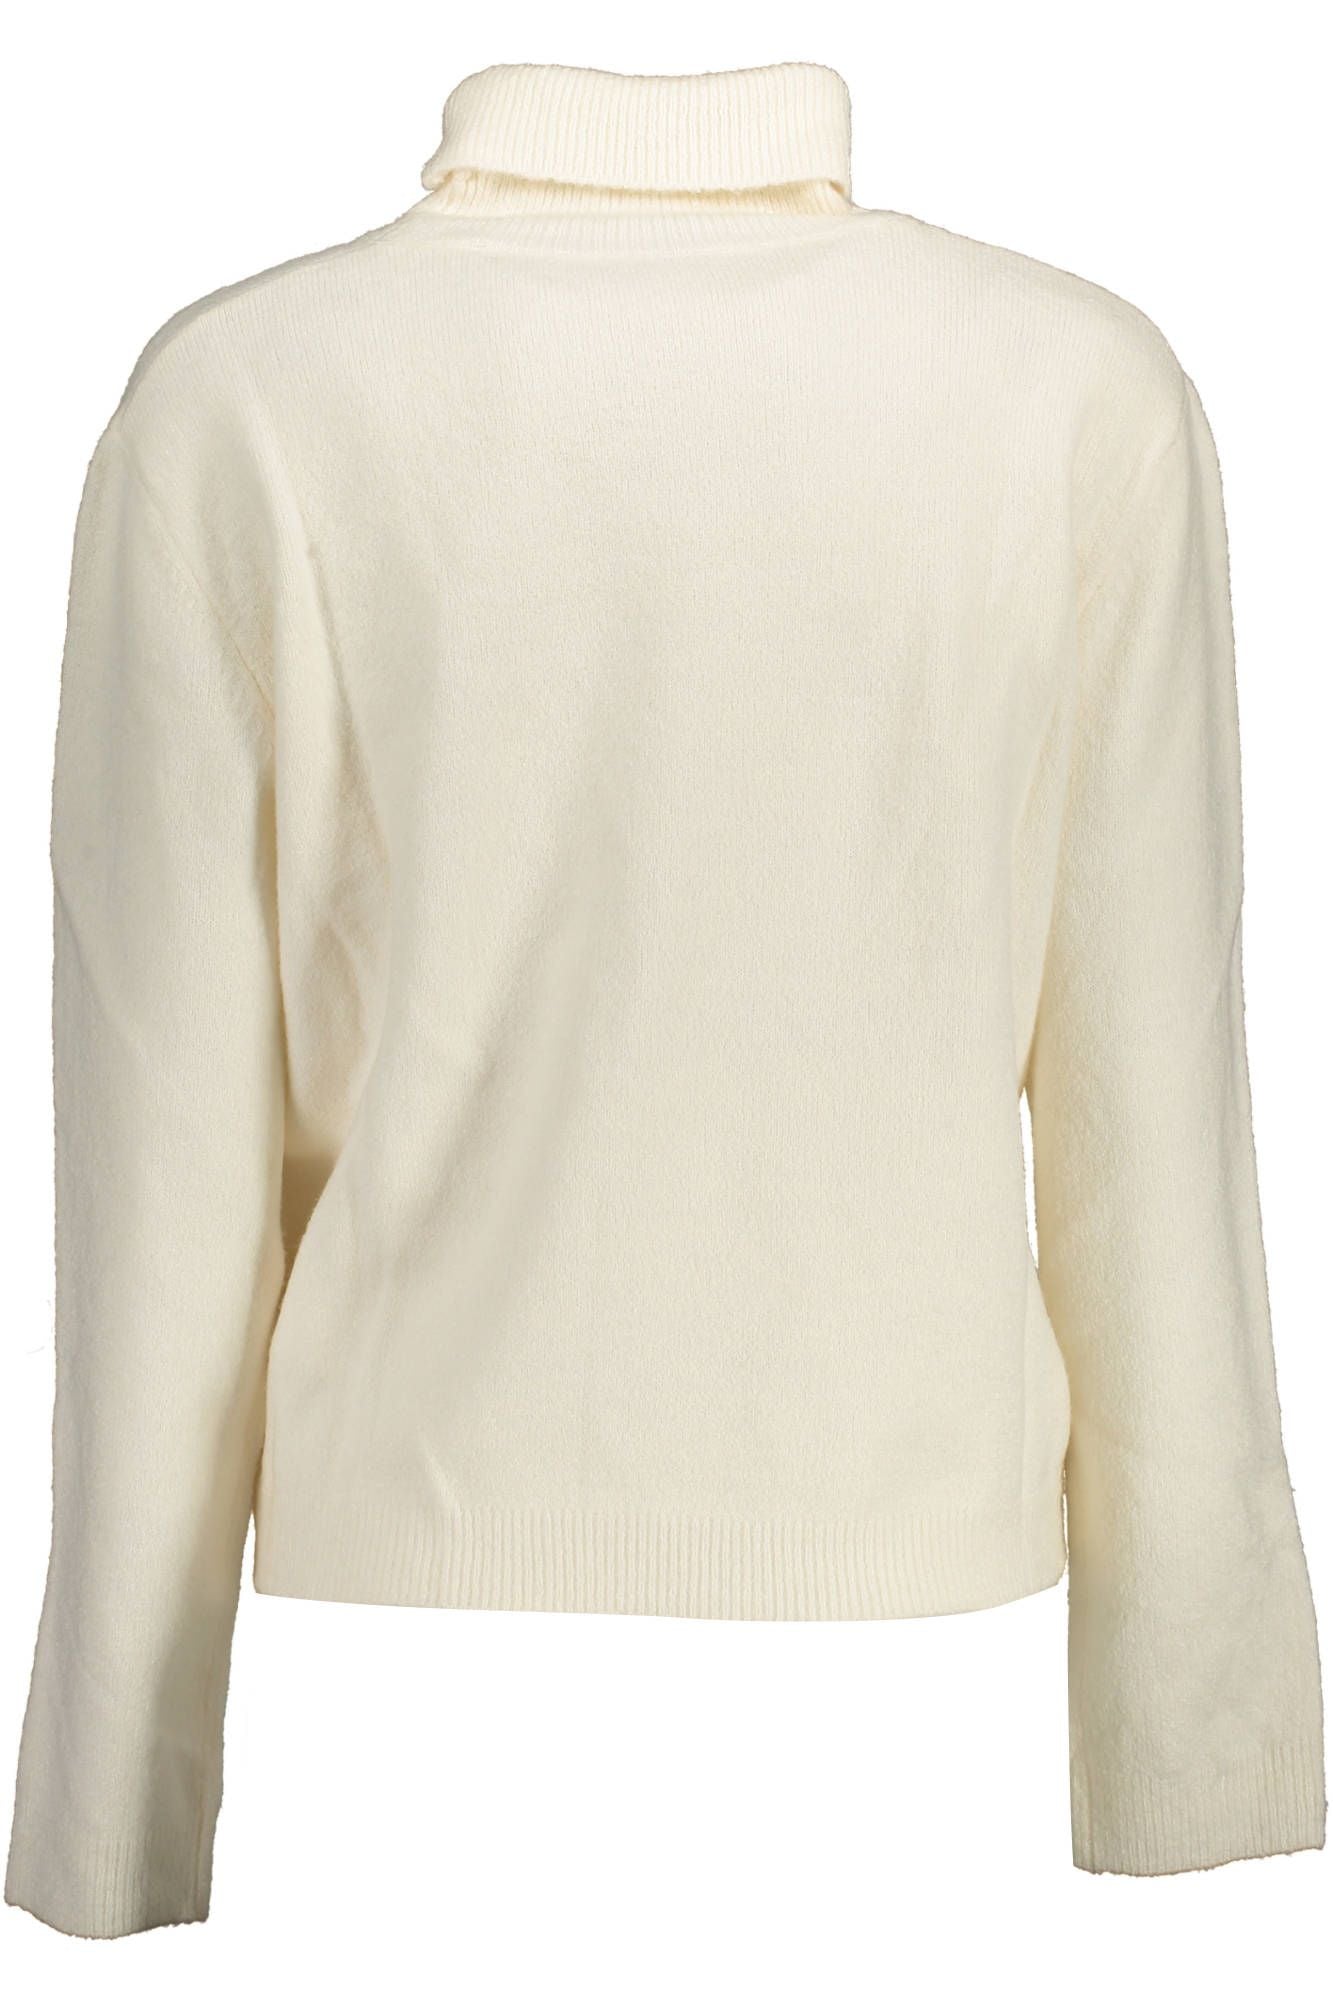 U.S. Polo Assn. White Nylon Sweater